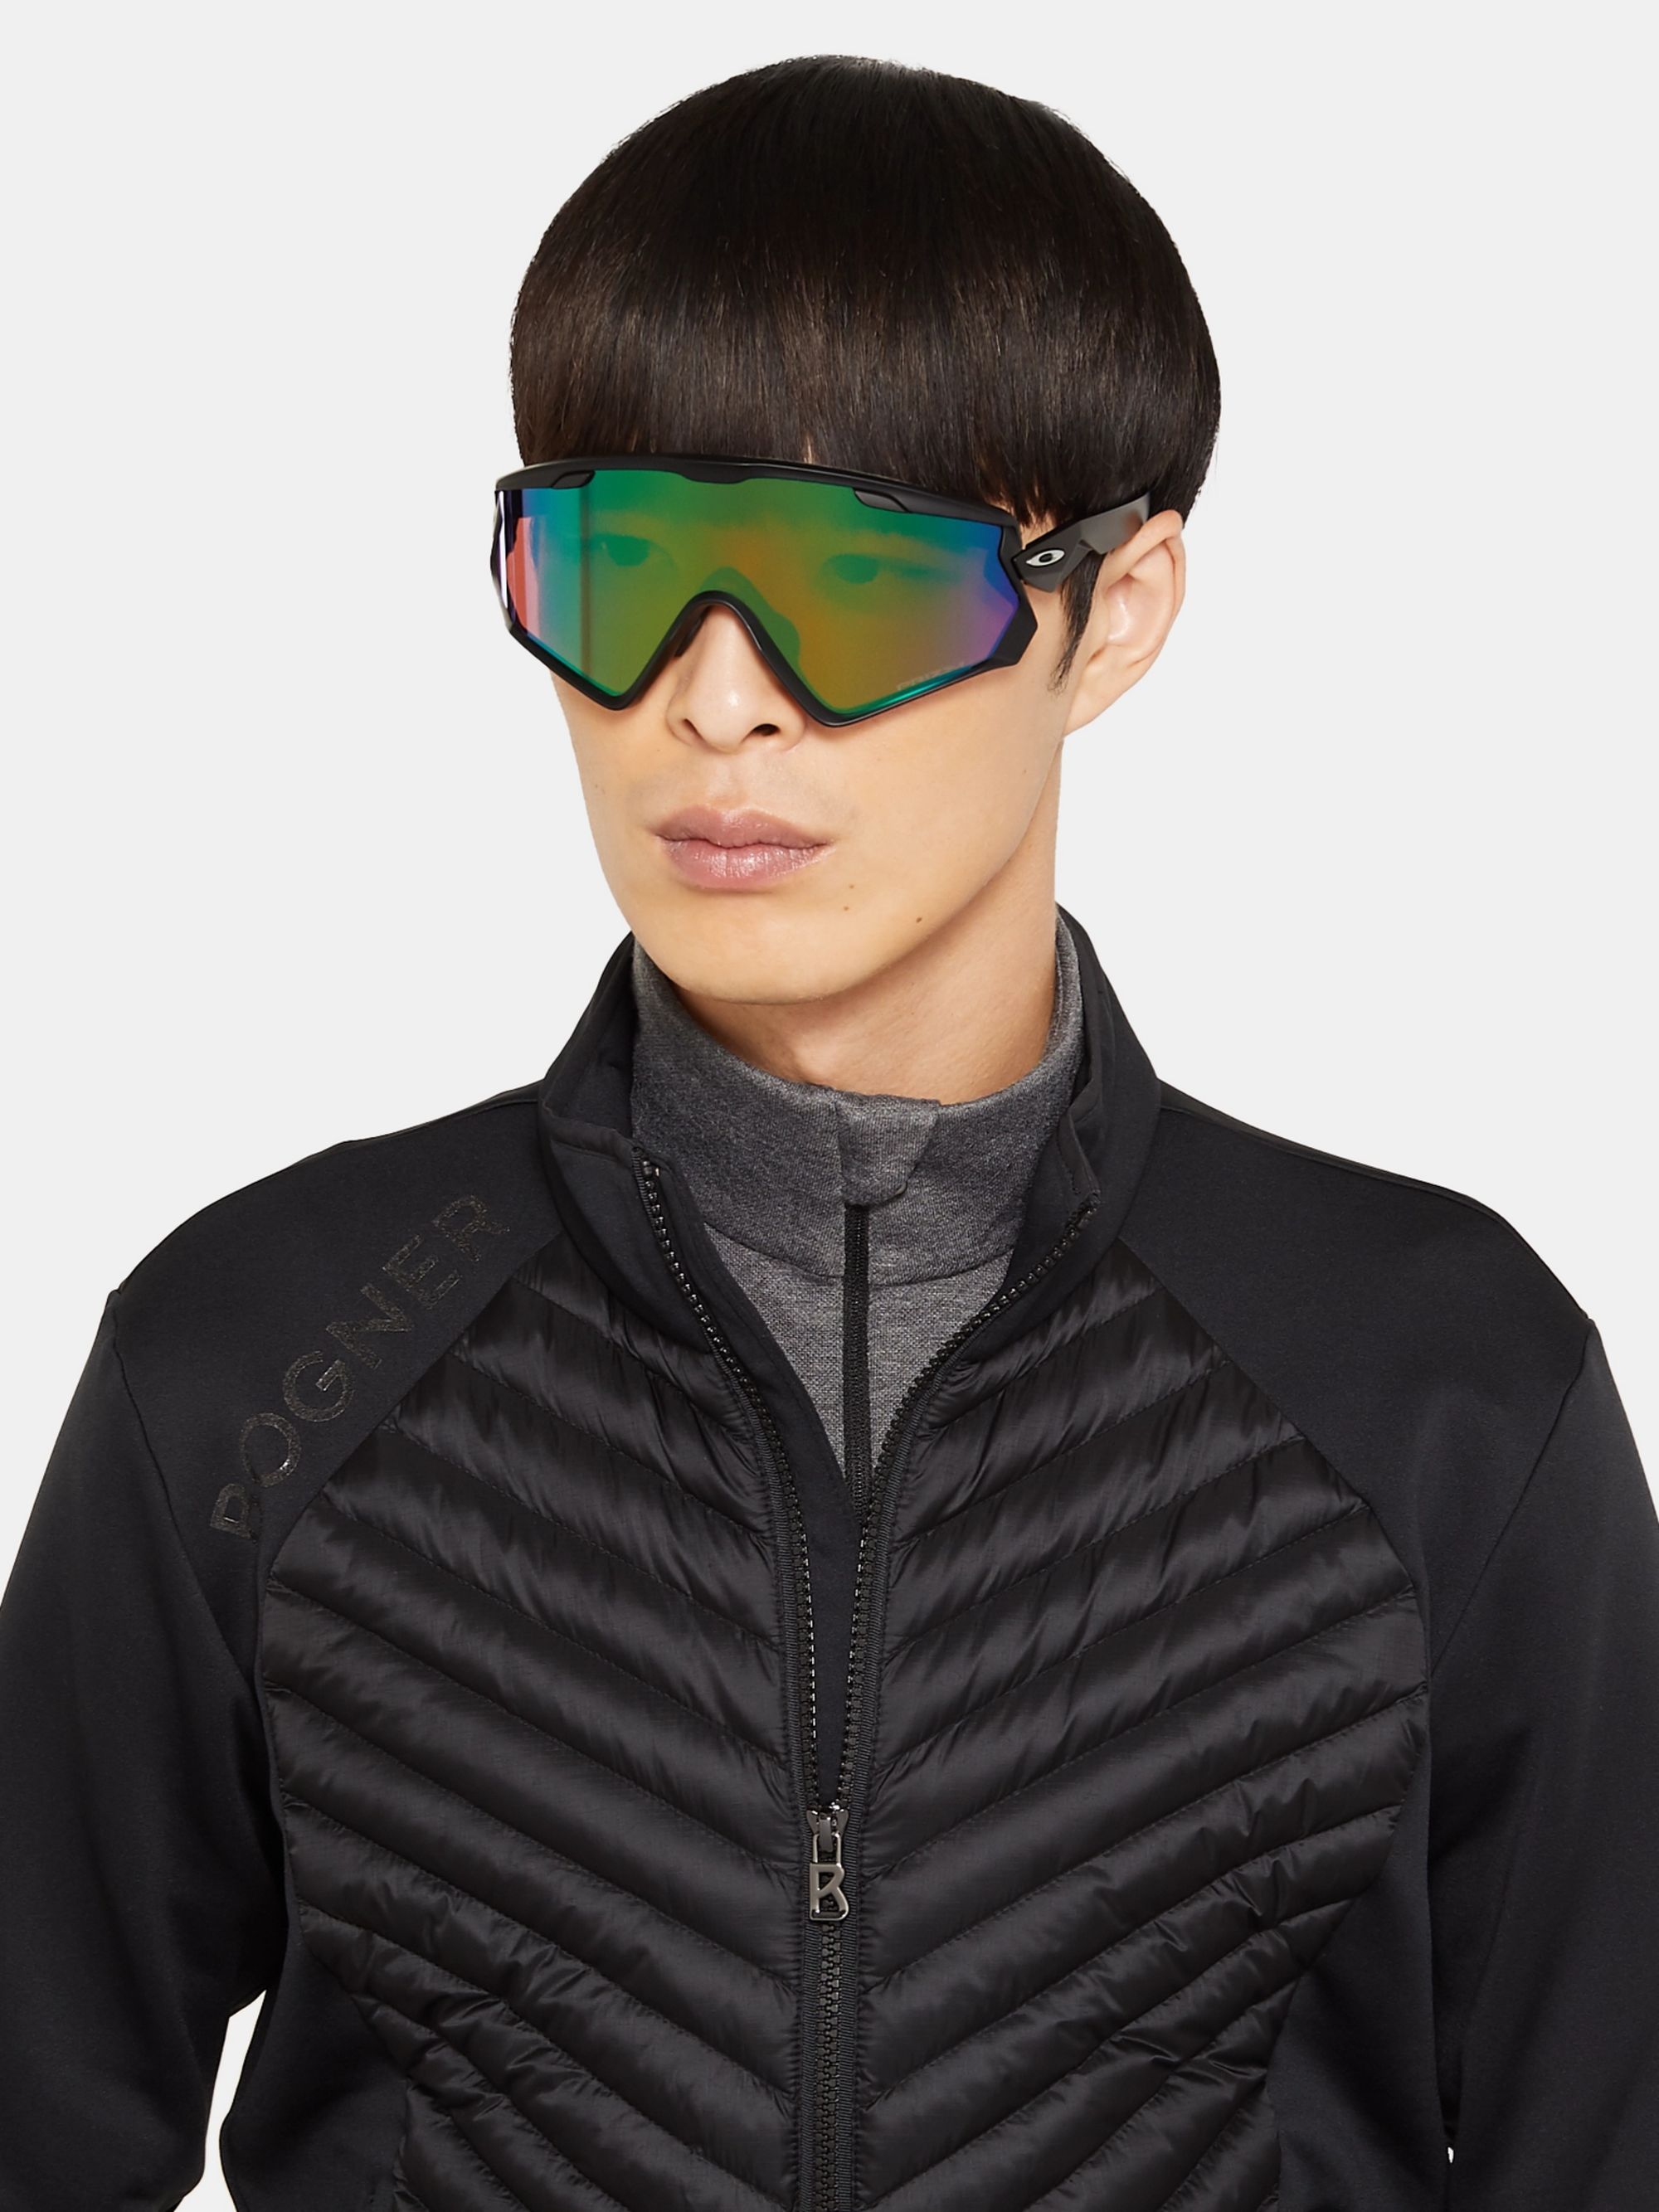 jacket 2.0 sunglasses